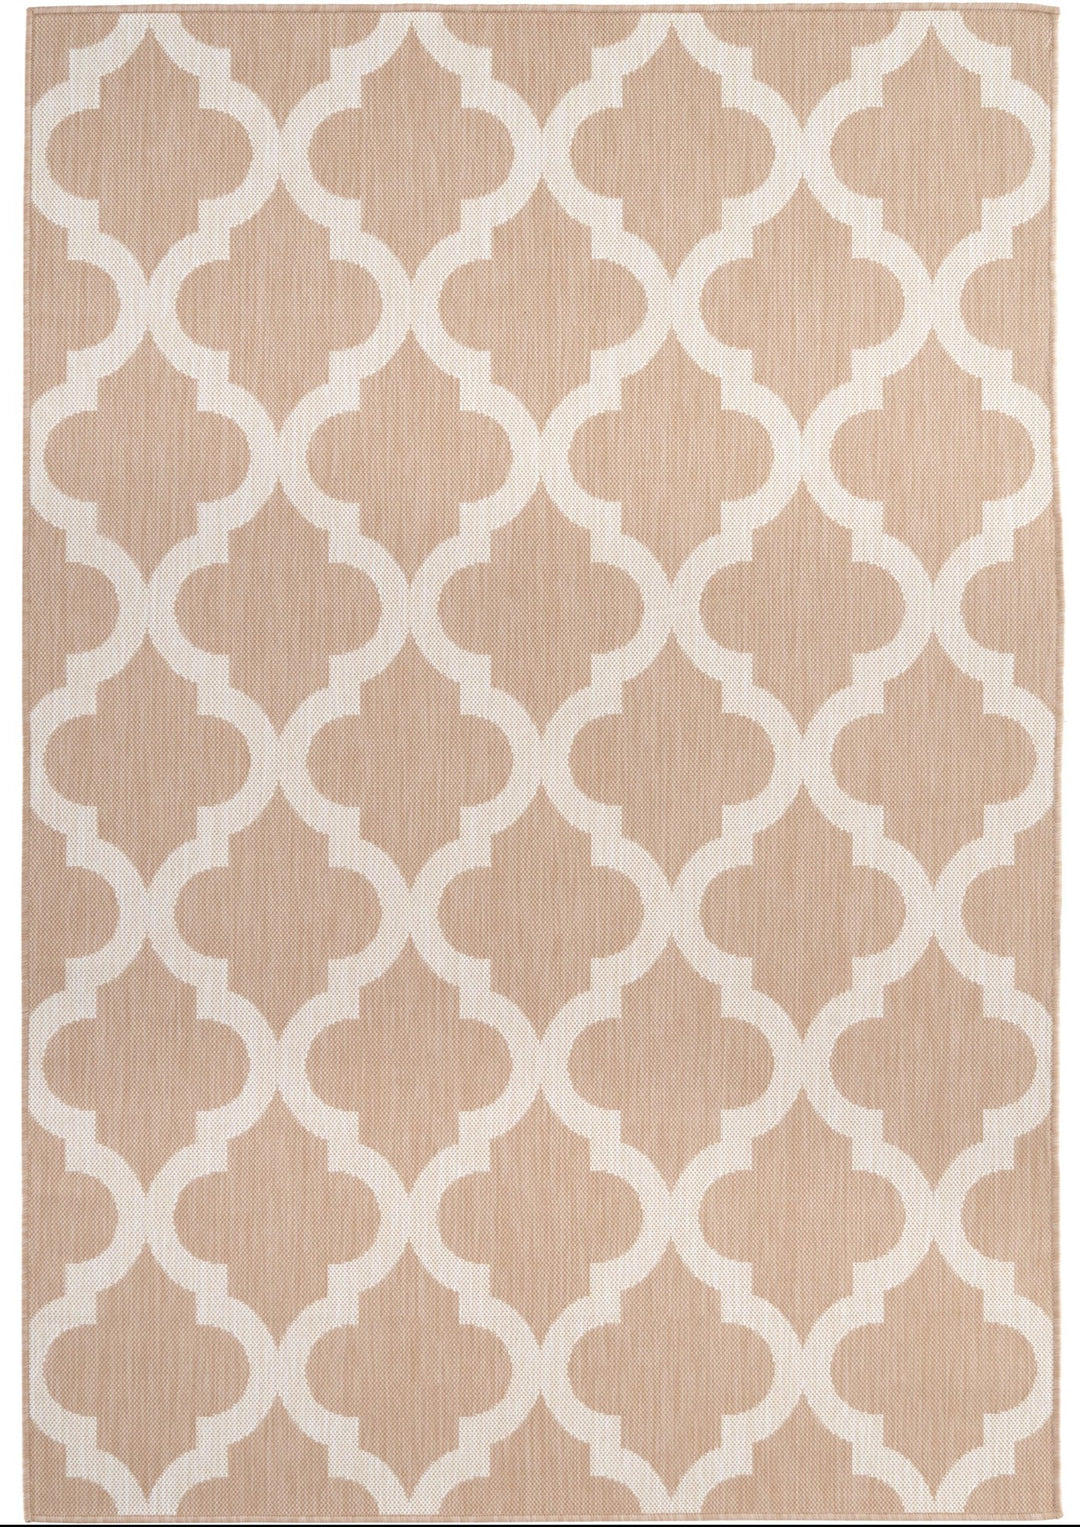 trellis-design-outdoor-rug-beige